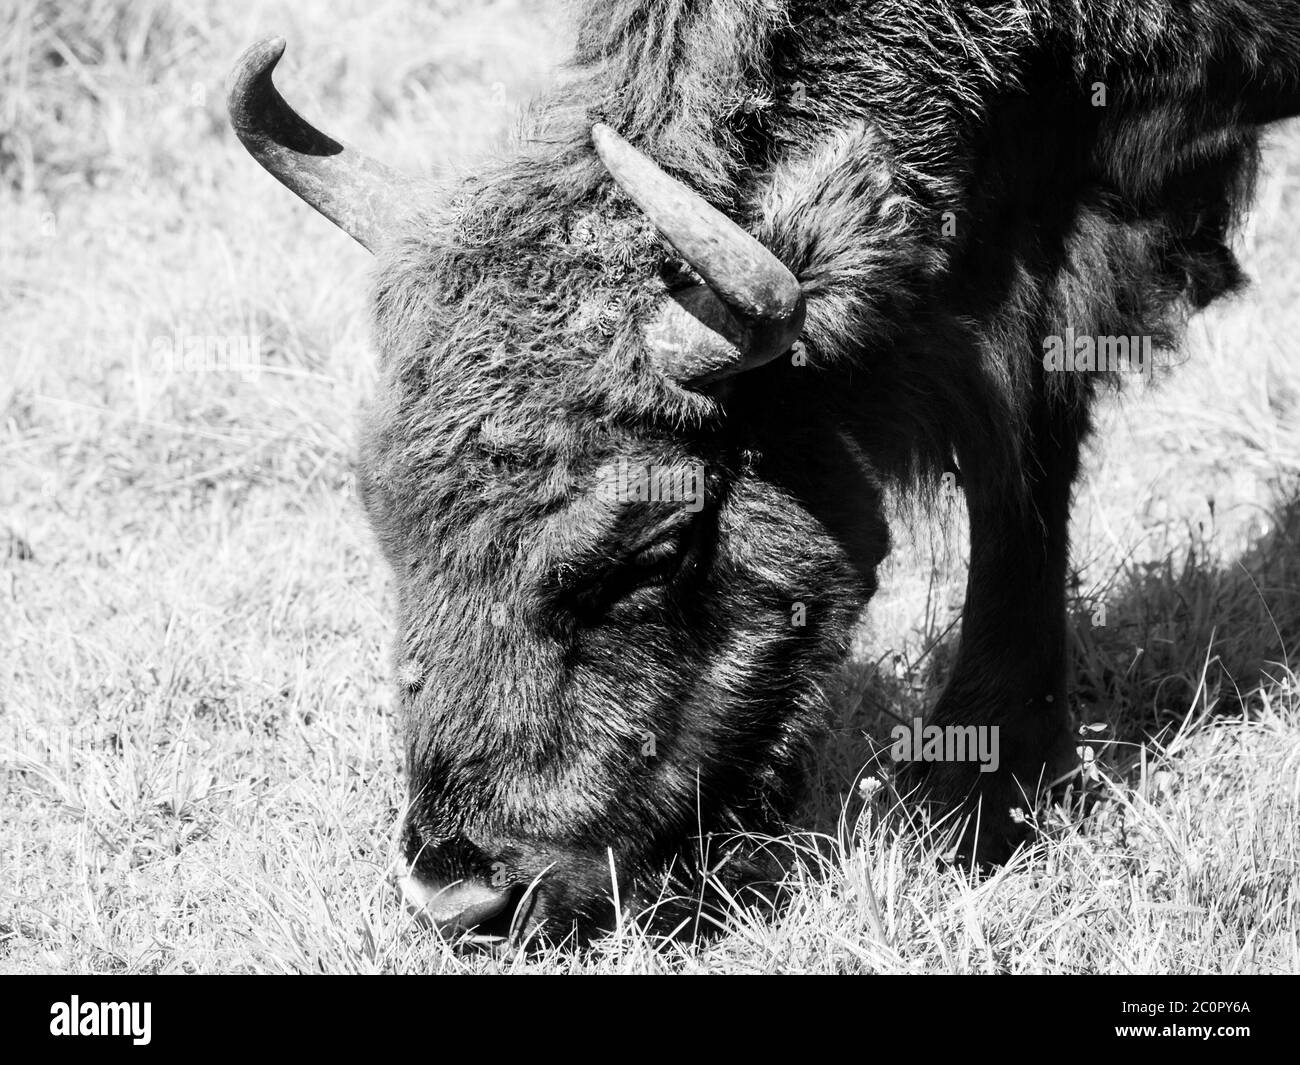 Vista dettagliata del bisonte europeo in pericolo di estinzione, o wisent, nella foresta primordiale di Bialowieza, in Polonia e in Bielorussia . Immagine in bianco e nero. Foto Stock